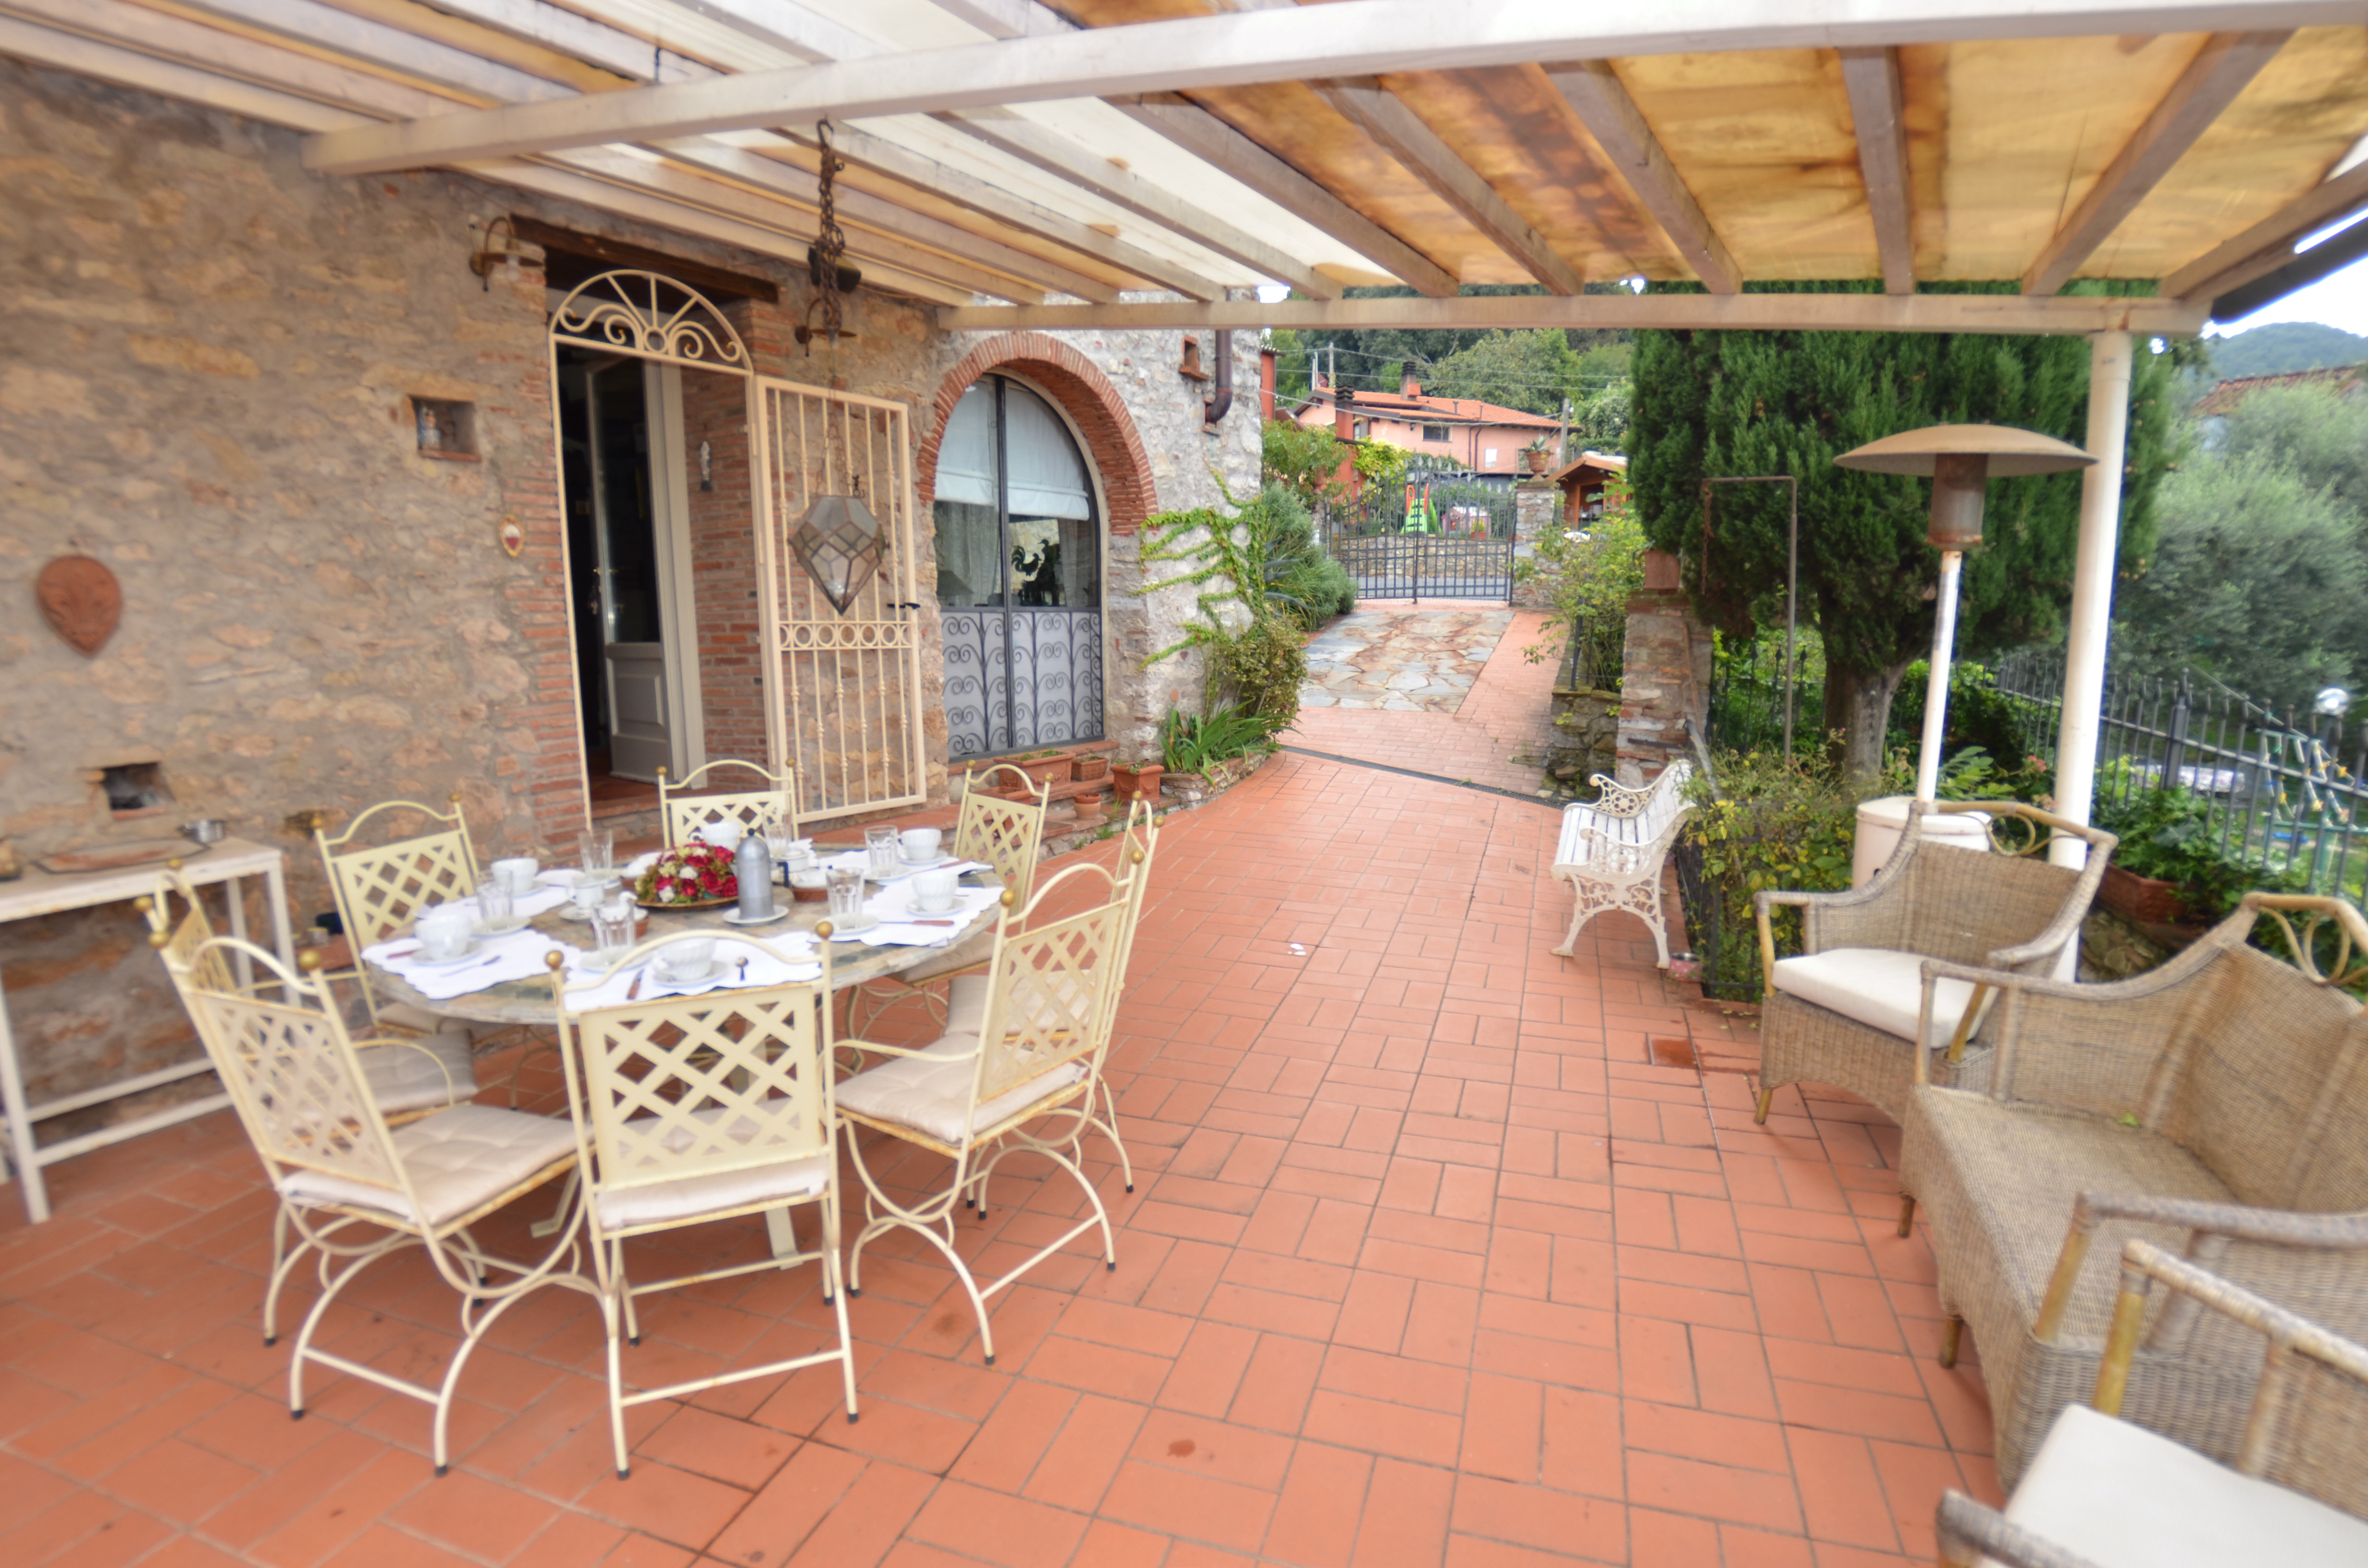 88_1bafd31_Casa Borgo Bucatra, vakantiehus met privé zwembad, panoramisch uitzicht, Toscane, Lucca (33)